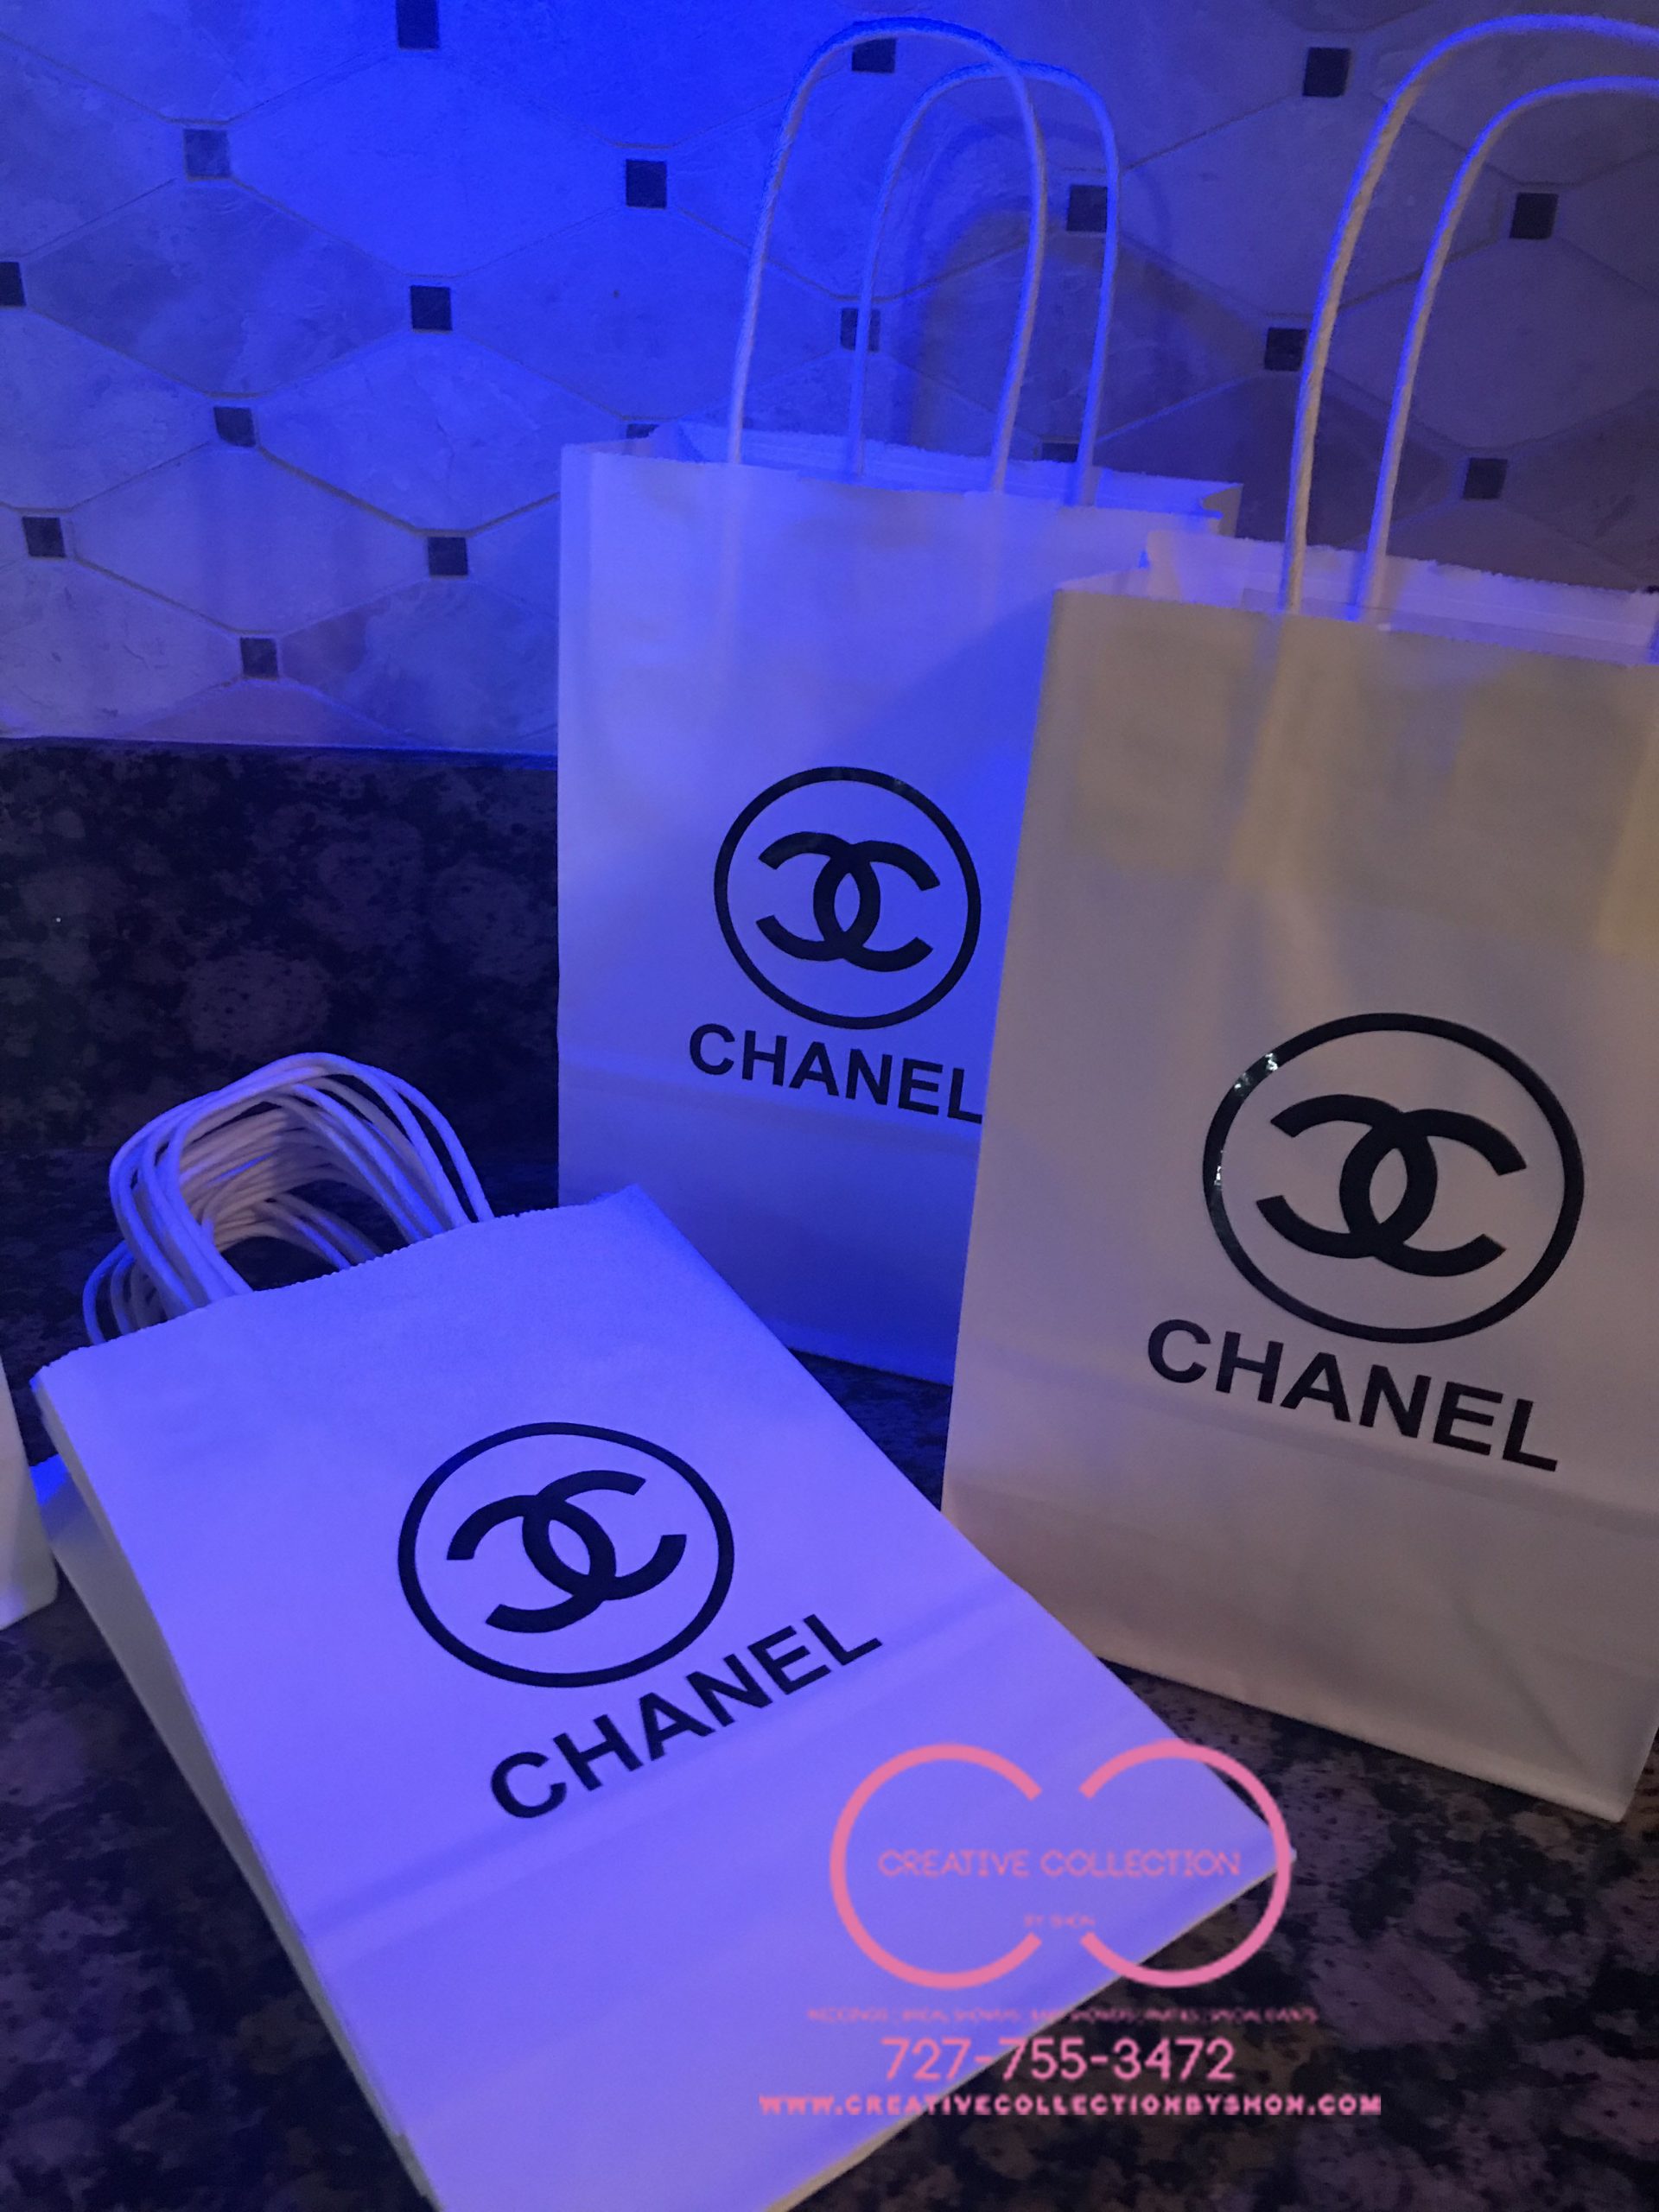 Parisian Small Gift Bags